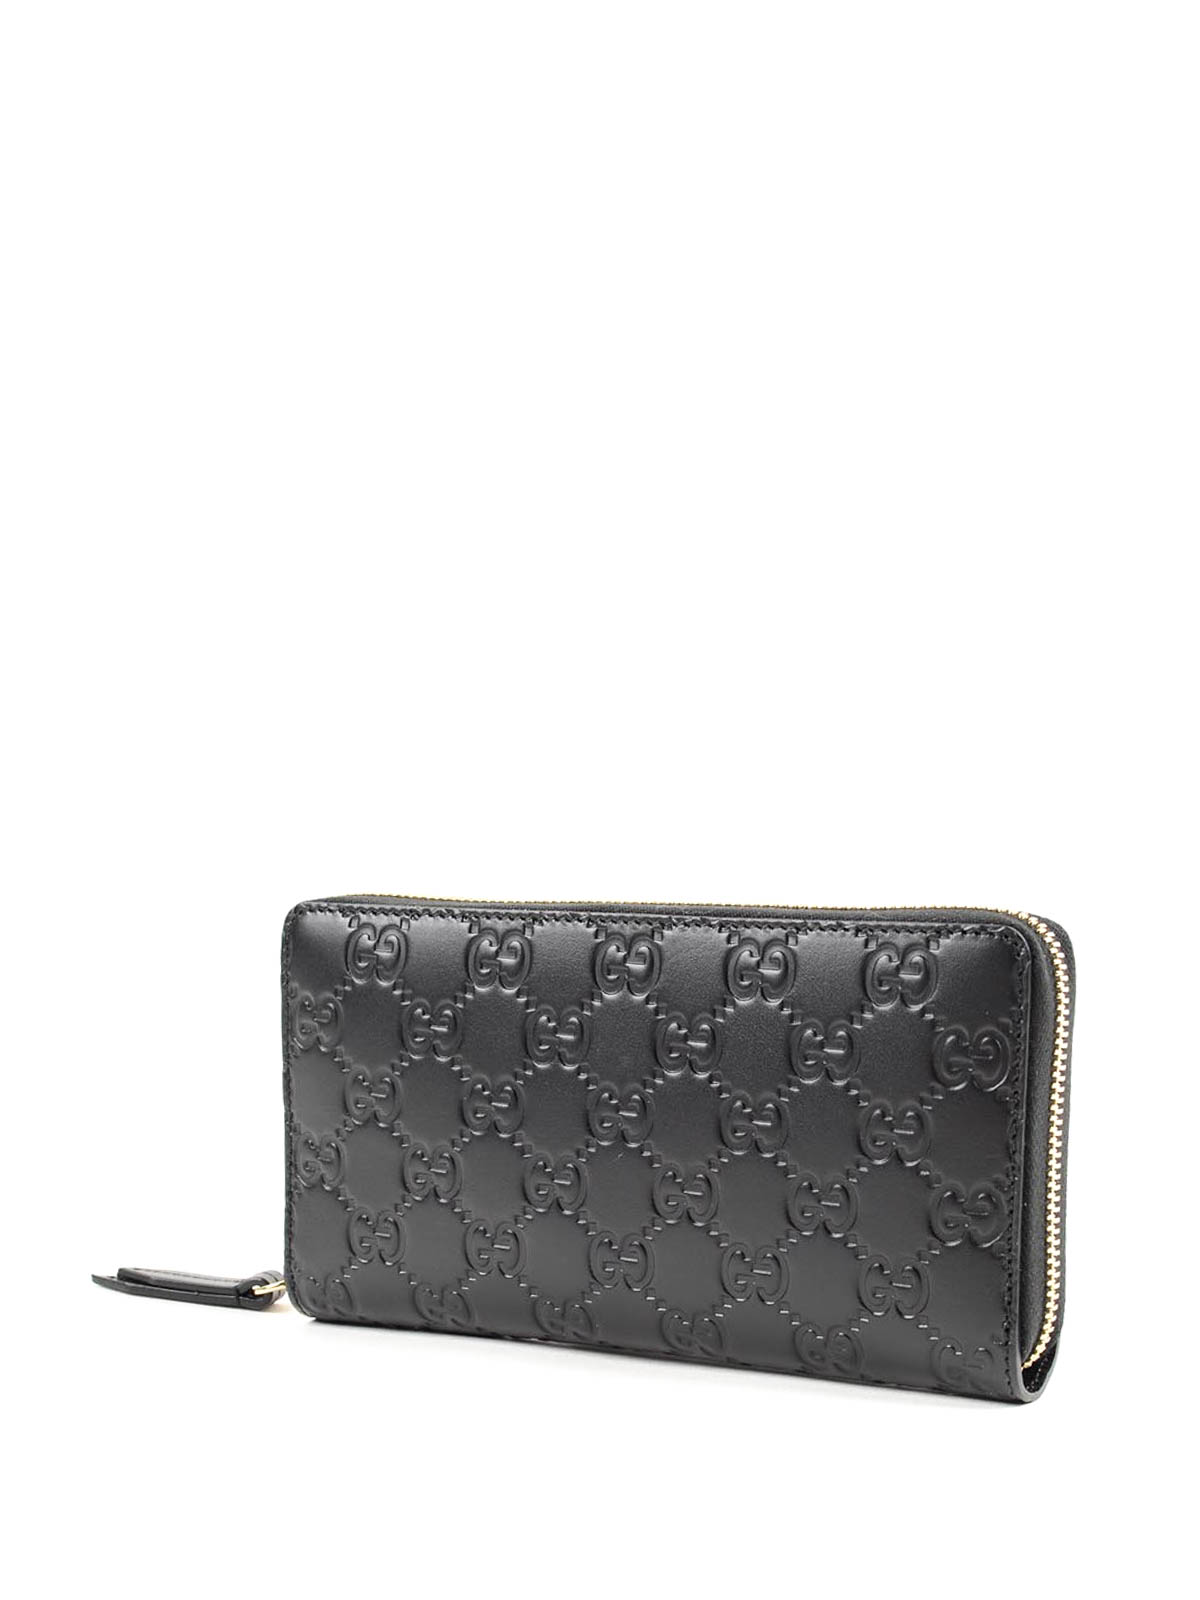 Wallets & purses Gucci - GG Signature wallet - 410102CWC1G1000 | iKRIX.com